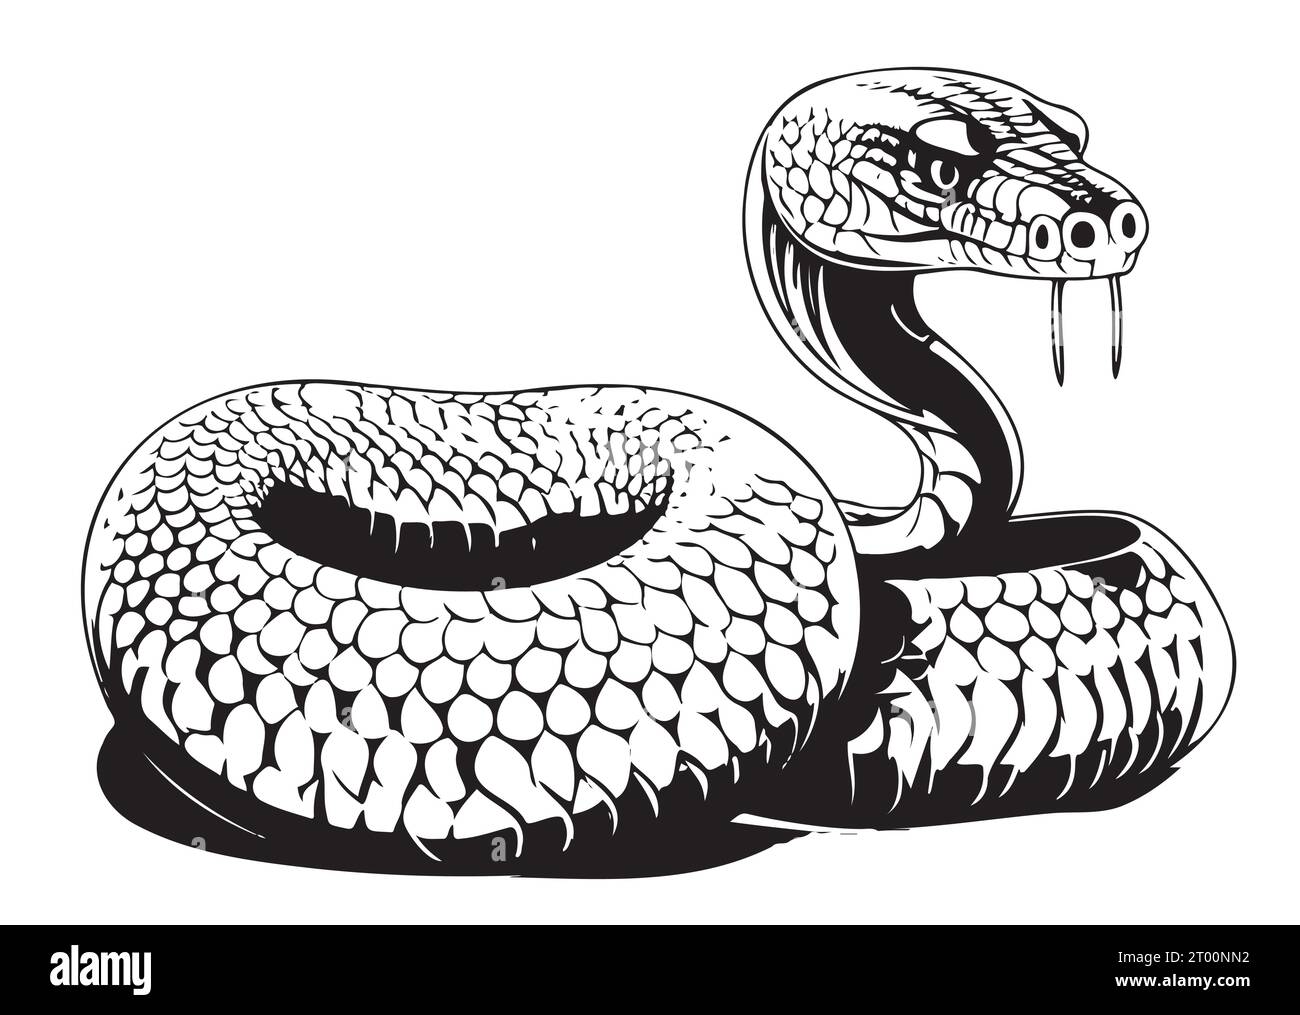 Snake cobra sketch hand drawn Vector Reptiles Stock Vector